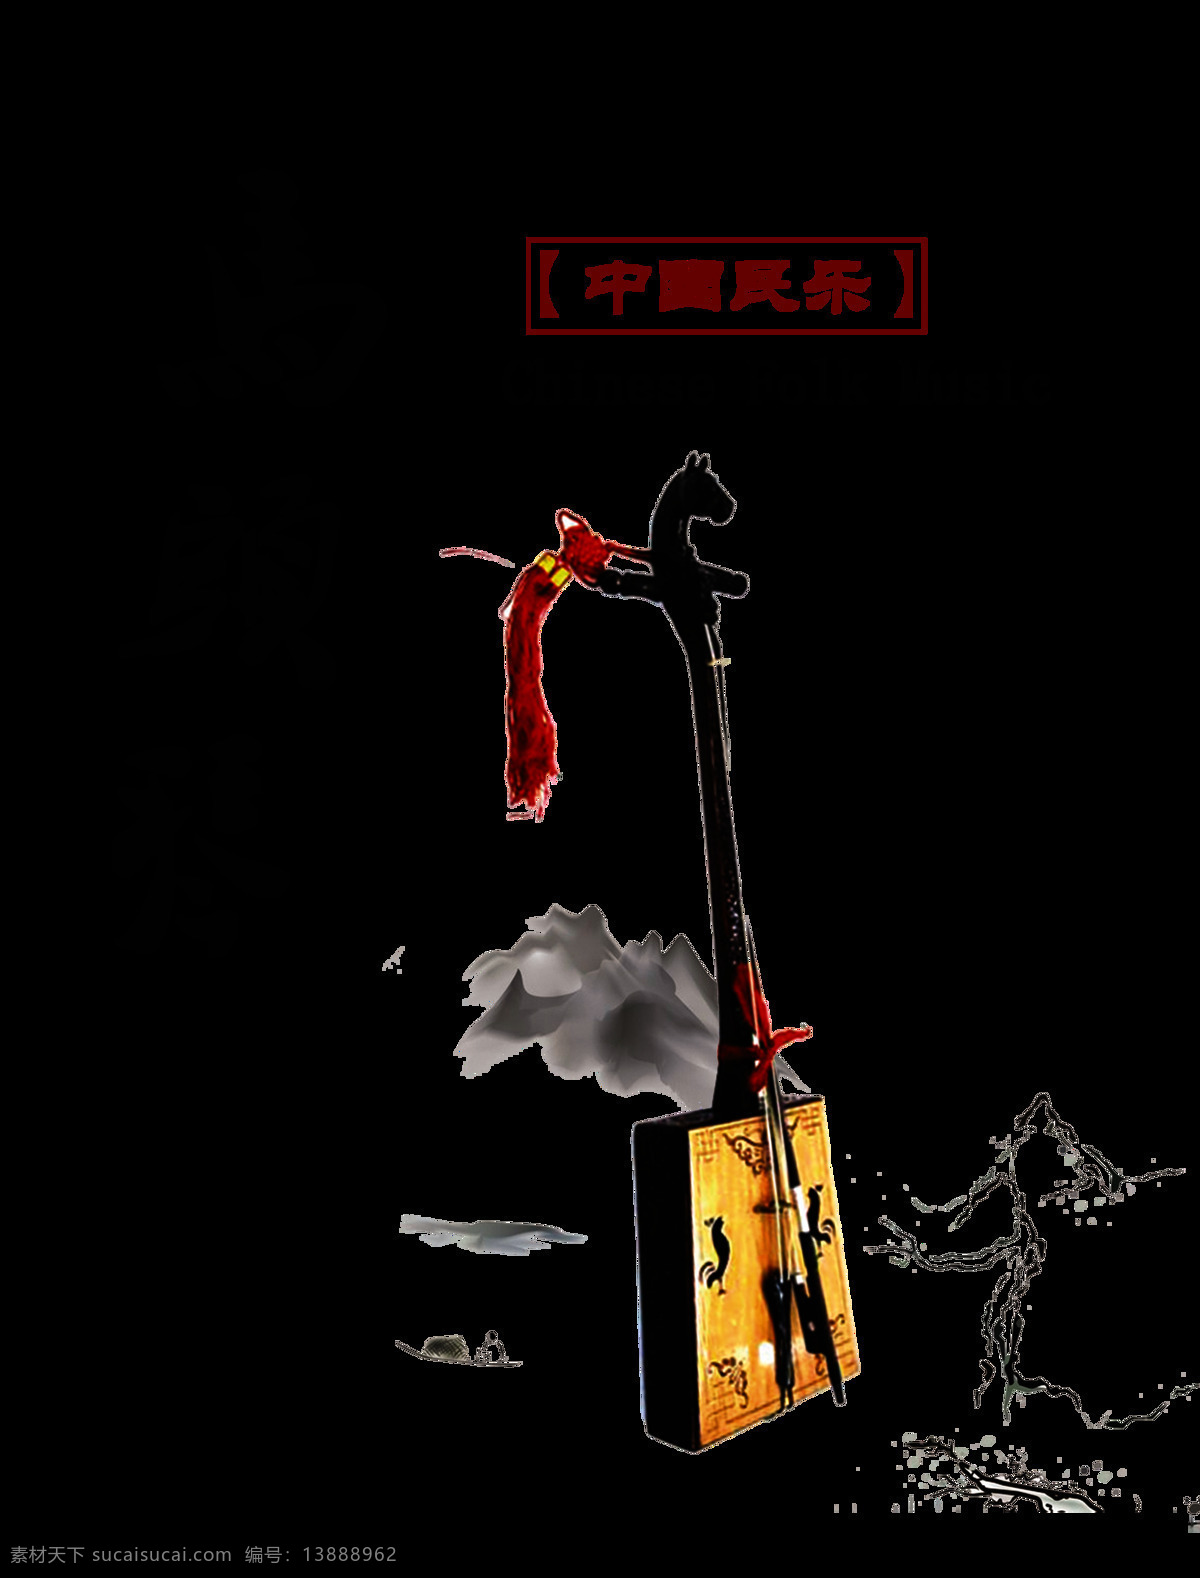 马头琴 中国 民乐 艺术 字 字体 宣传 排版 中国民乐 传统文化 传承 海报 元素 艺术字